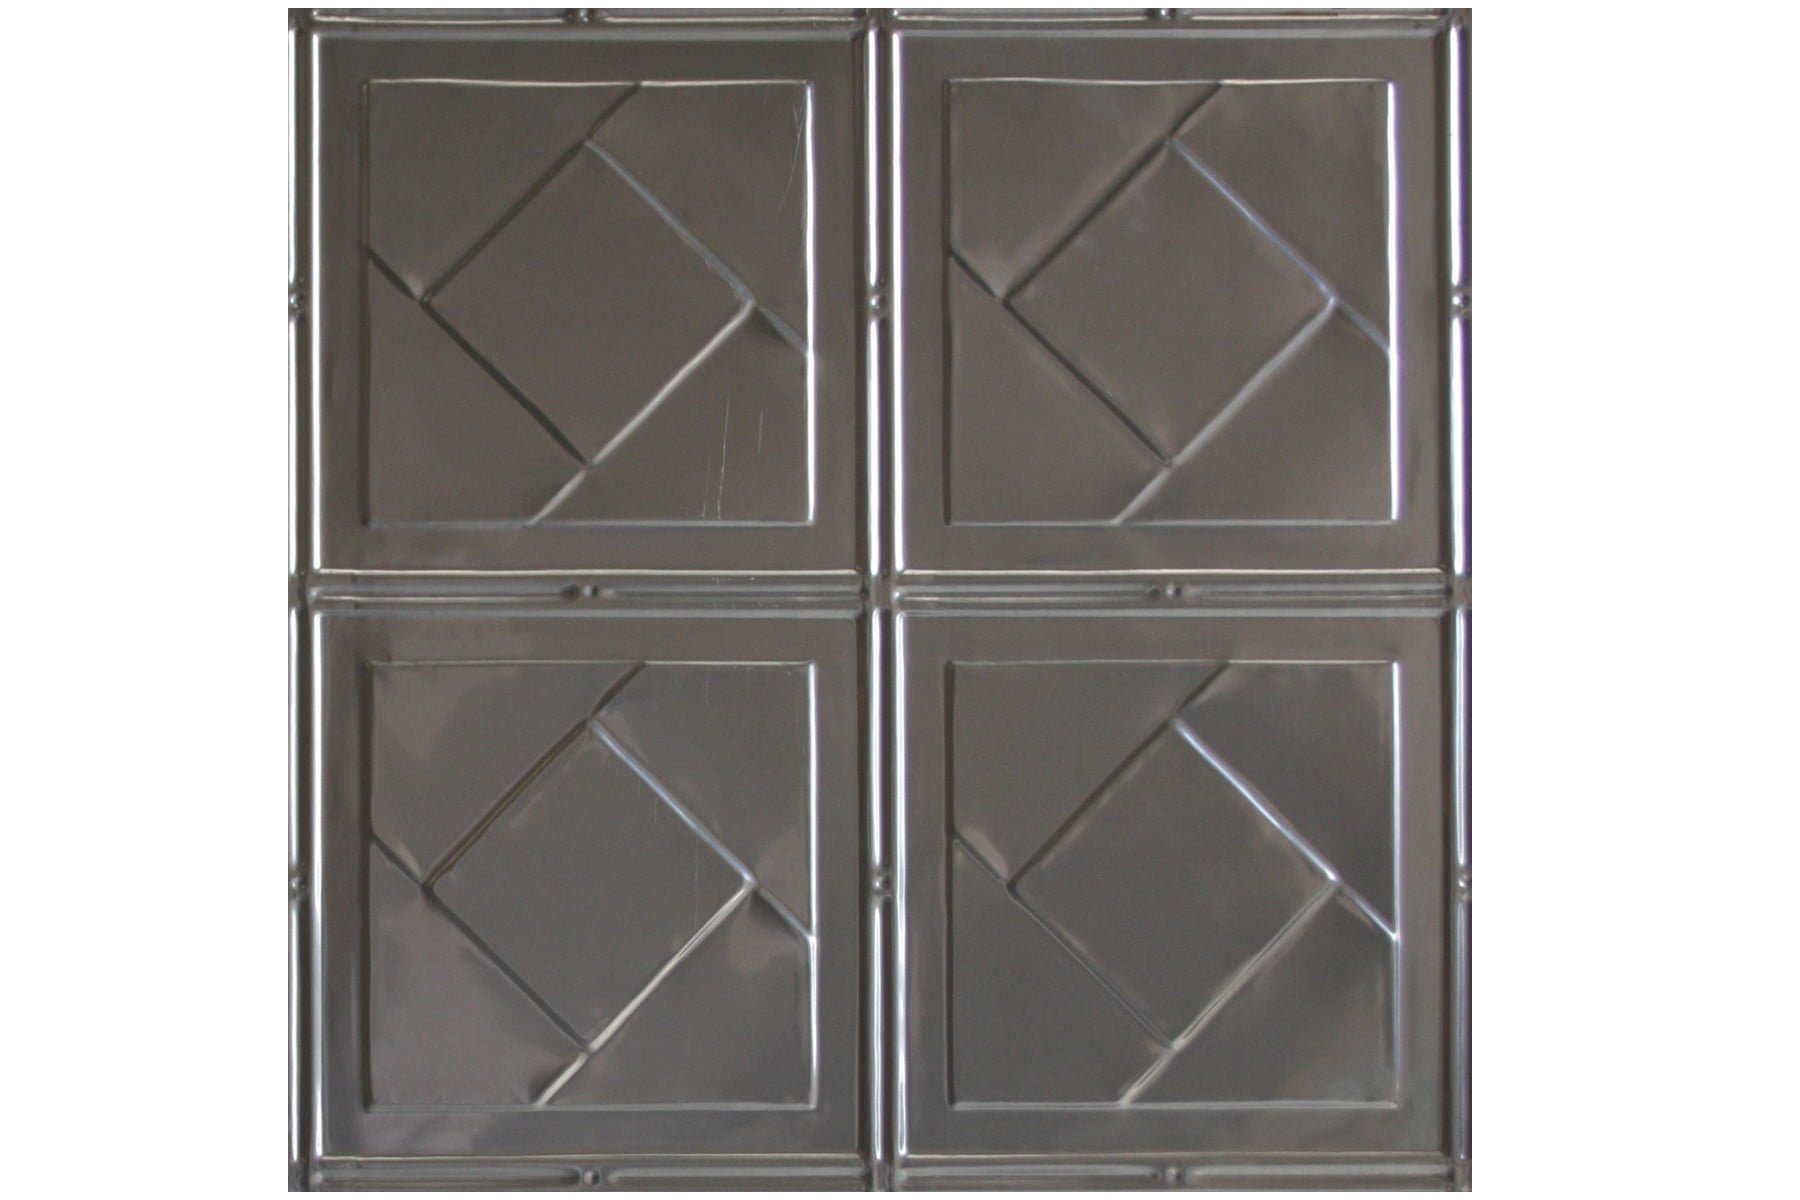 Wunderlich Pressed Metal Panels No 1705 Art Deco